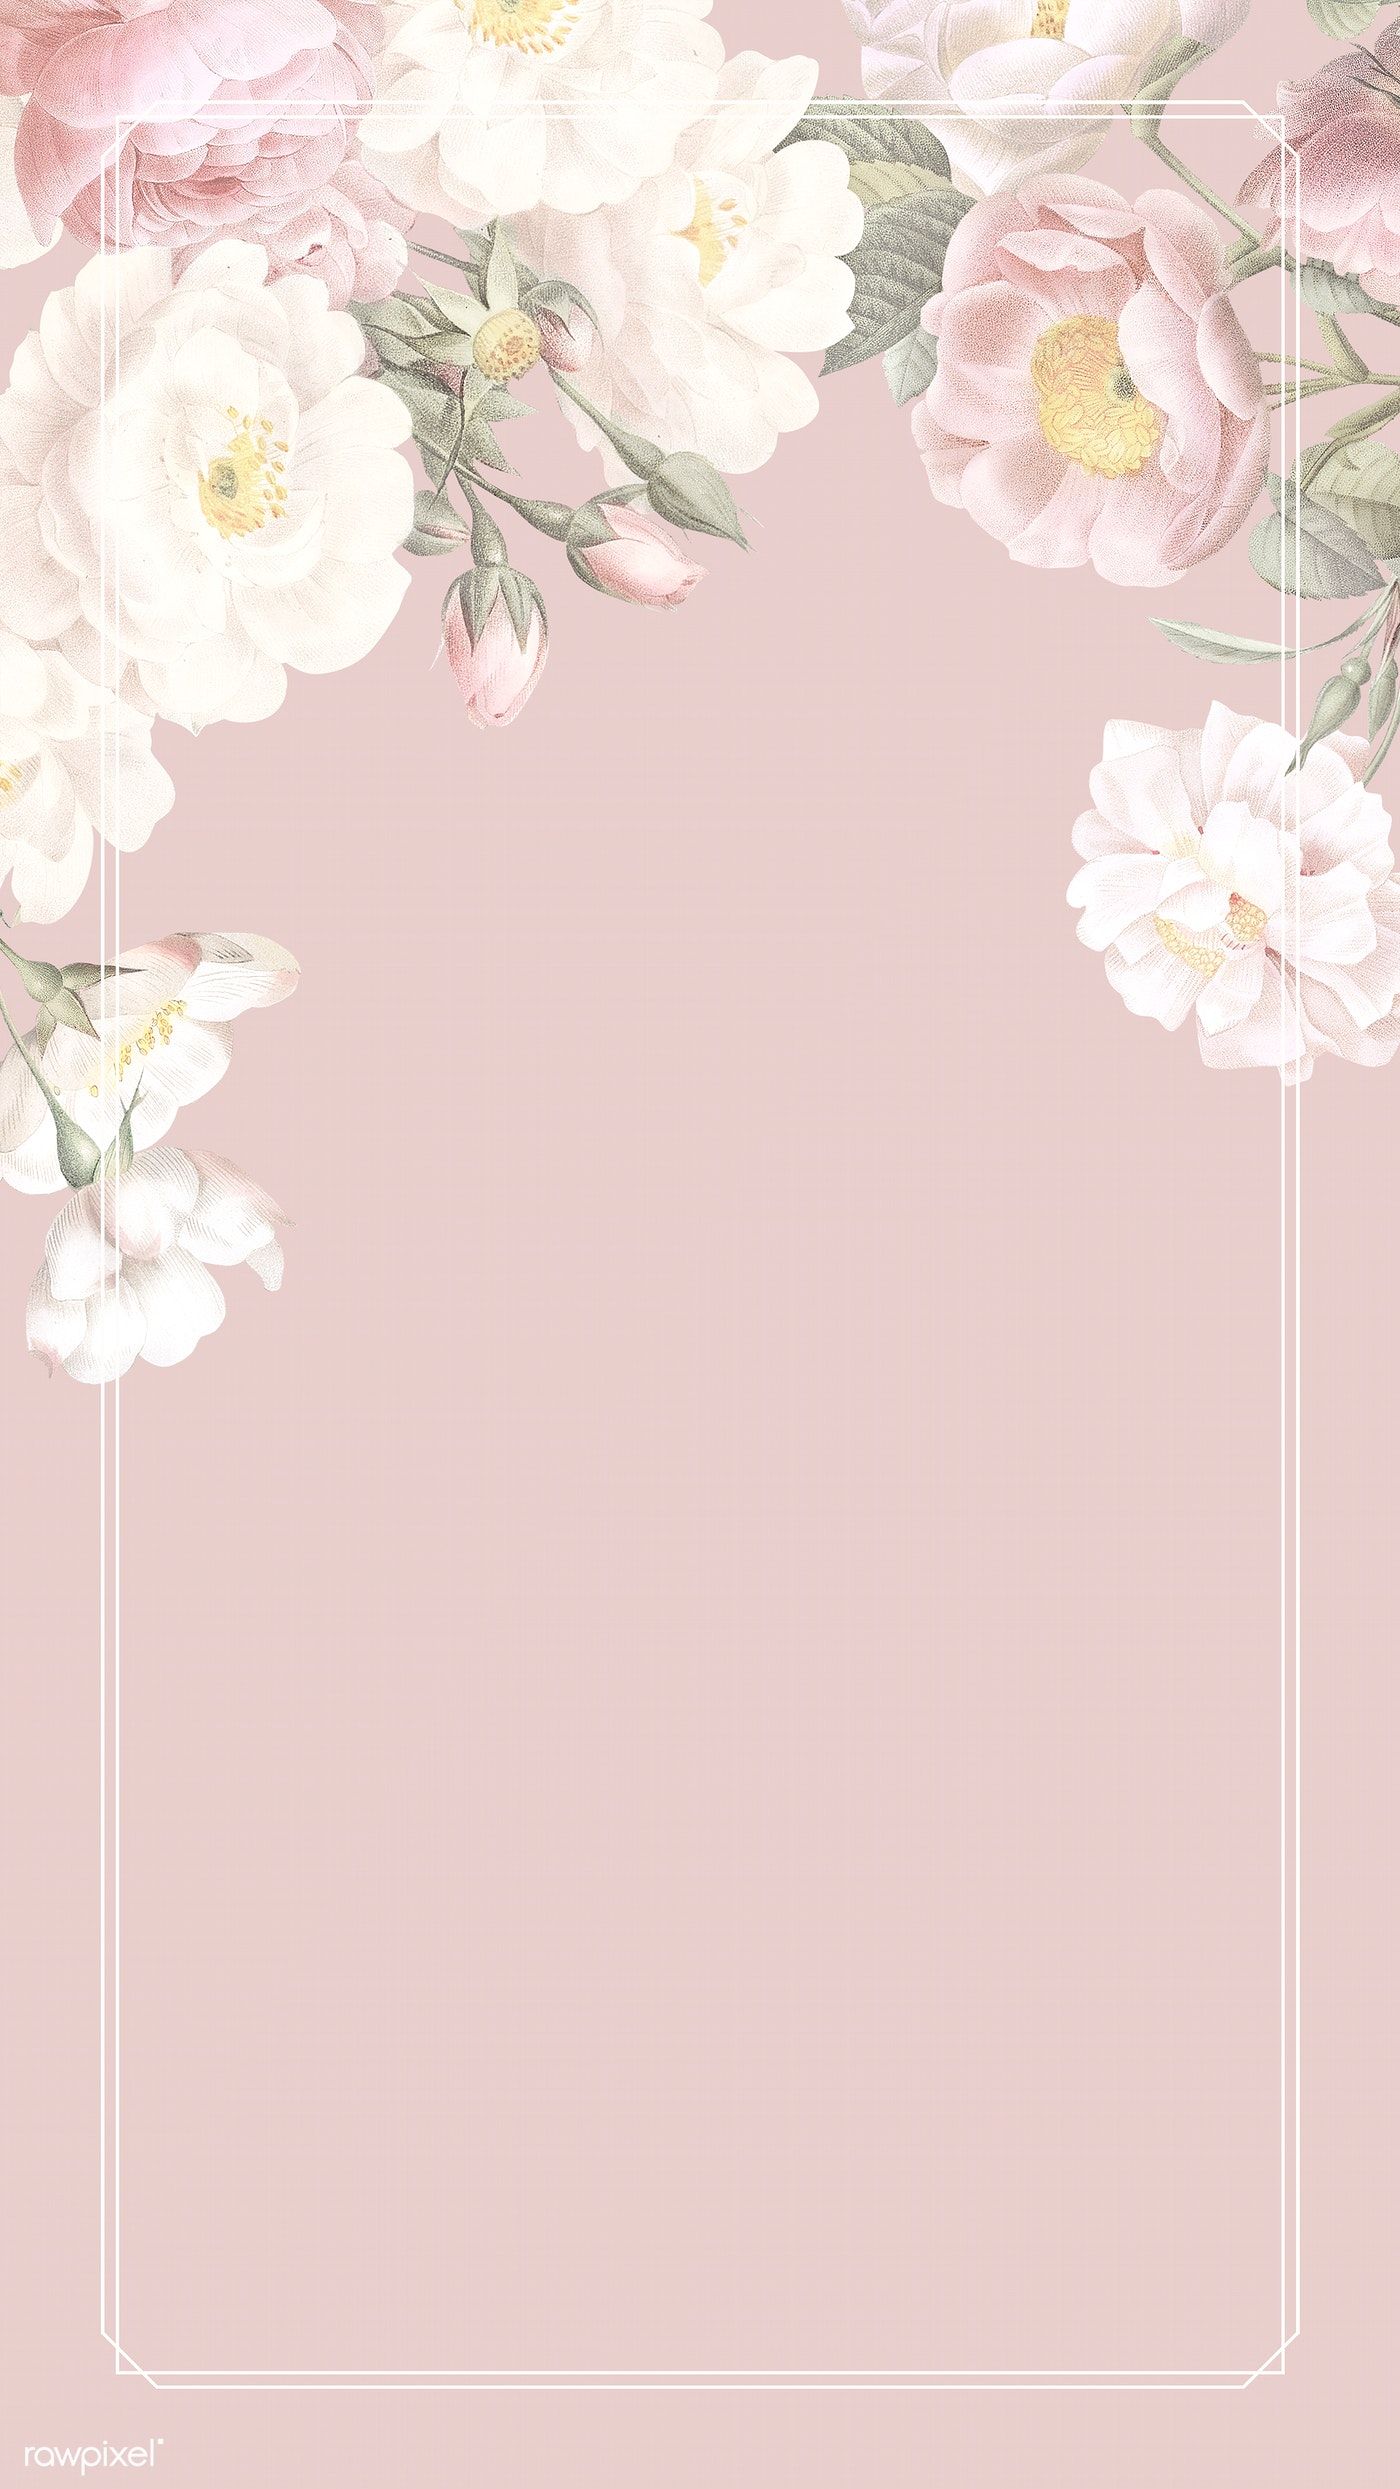 Download premium illustration of Elegant floral frame design